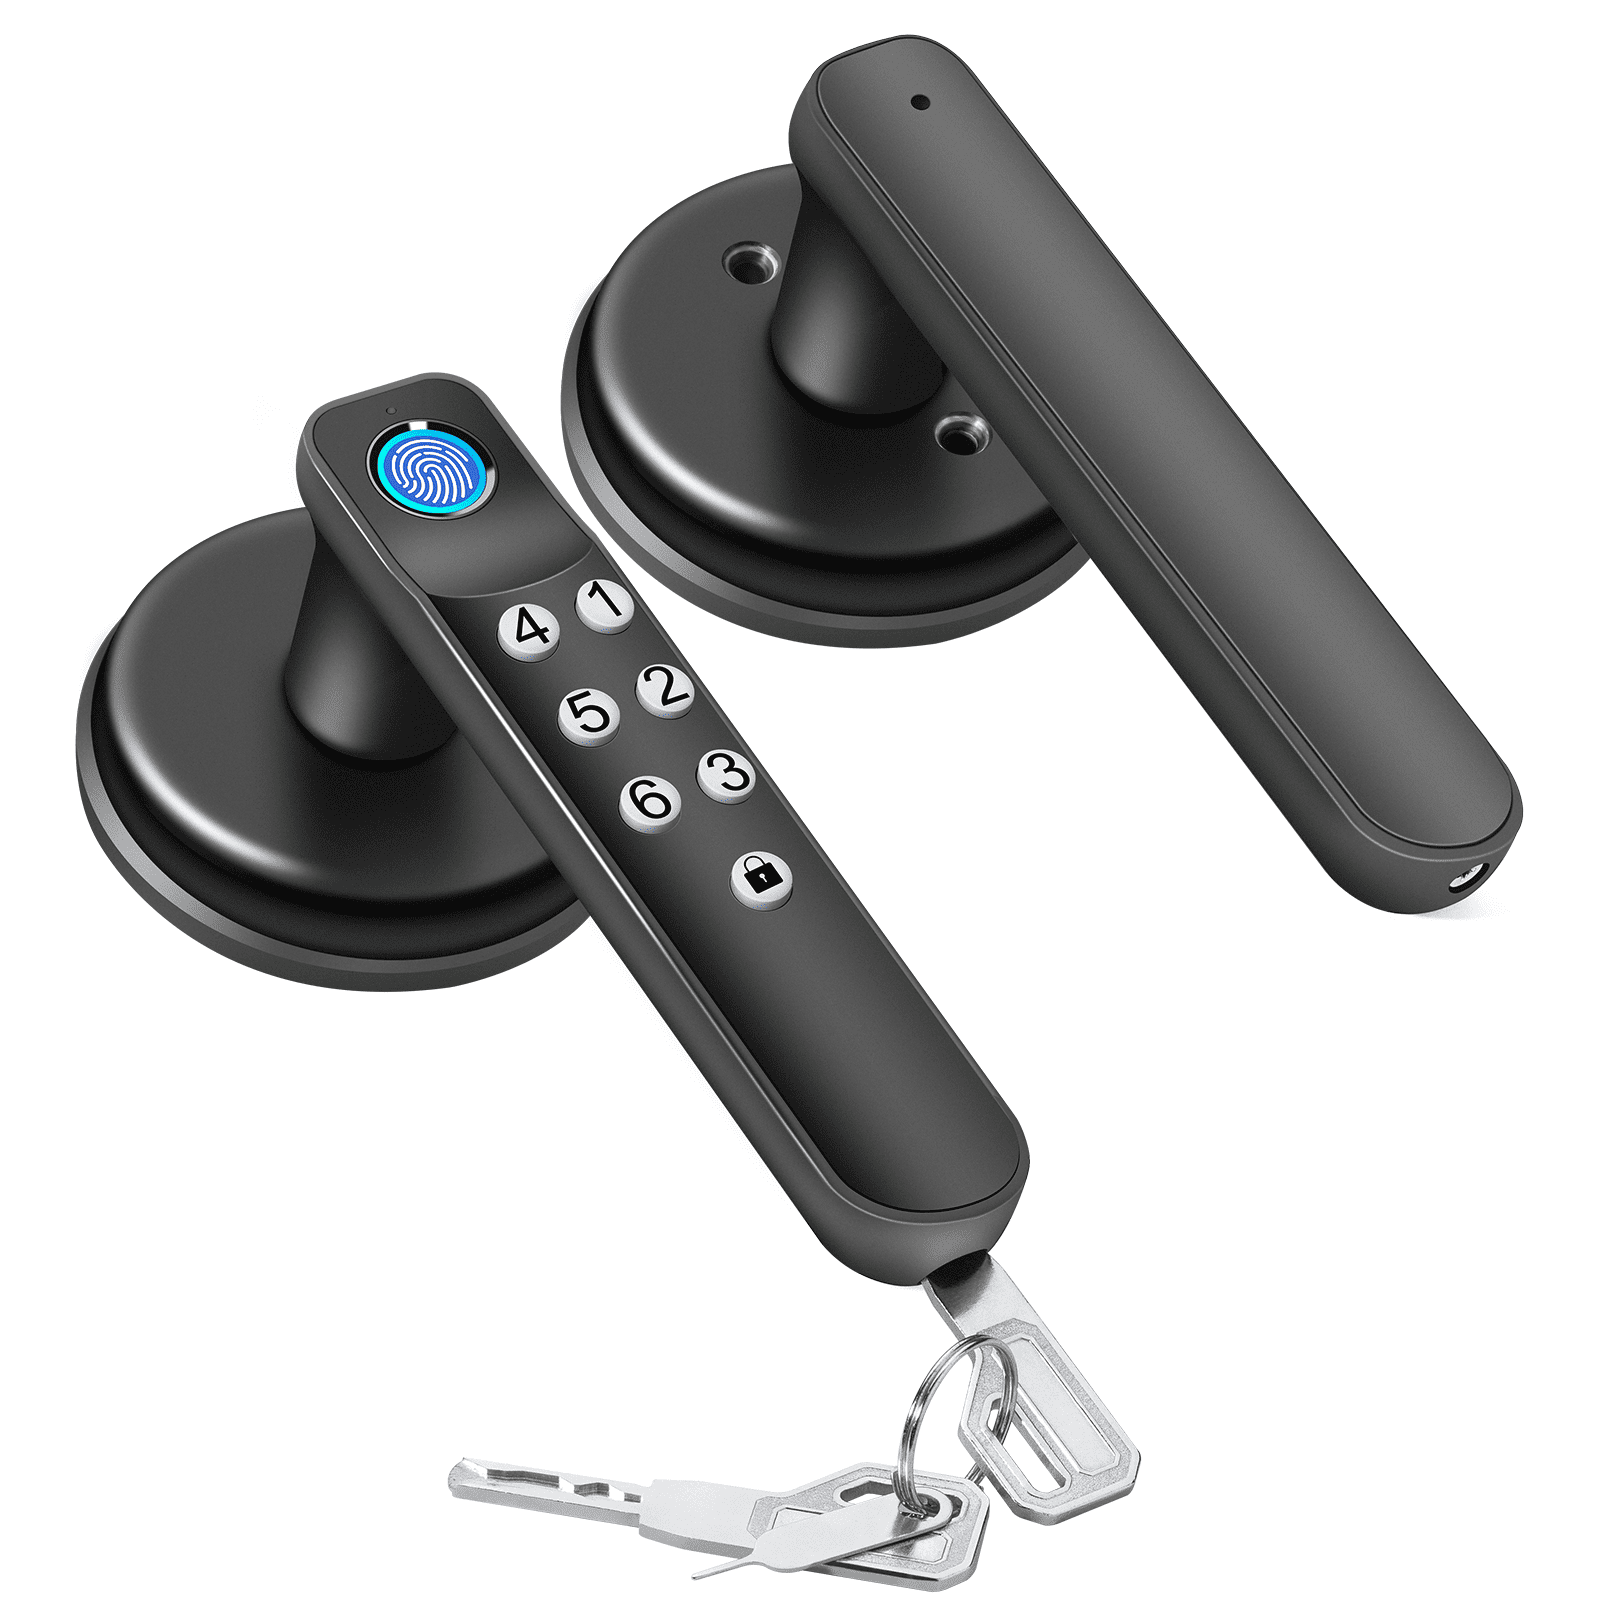 Wyze Lock Bolt  Biometric Bluetooth Smart Lock – Wyze Labs, Inc.